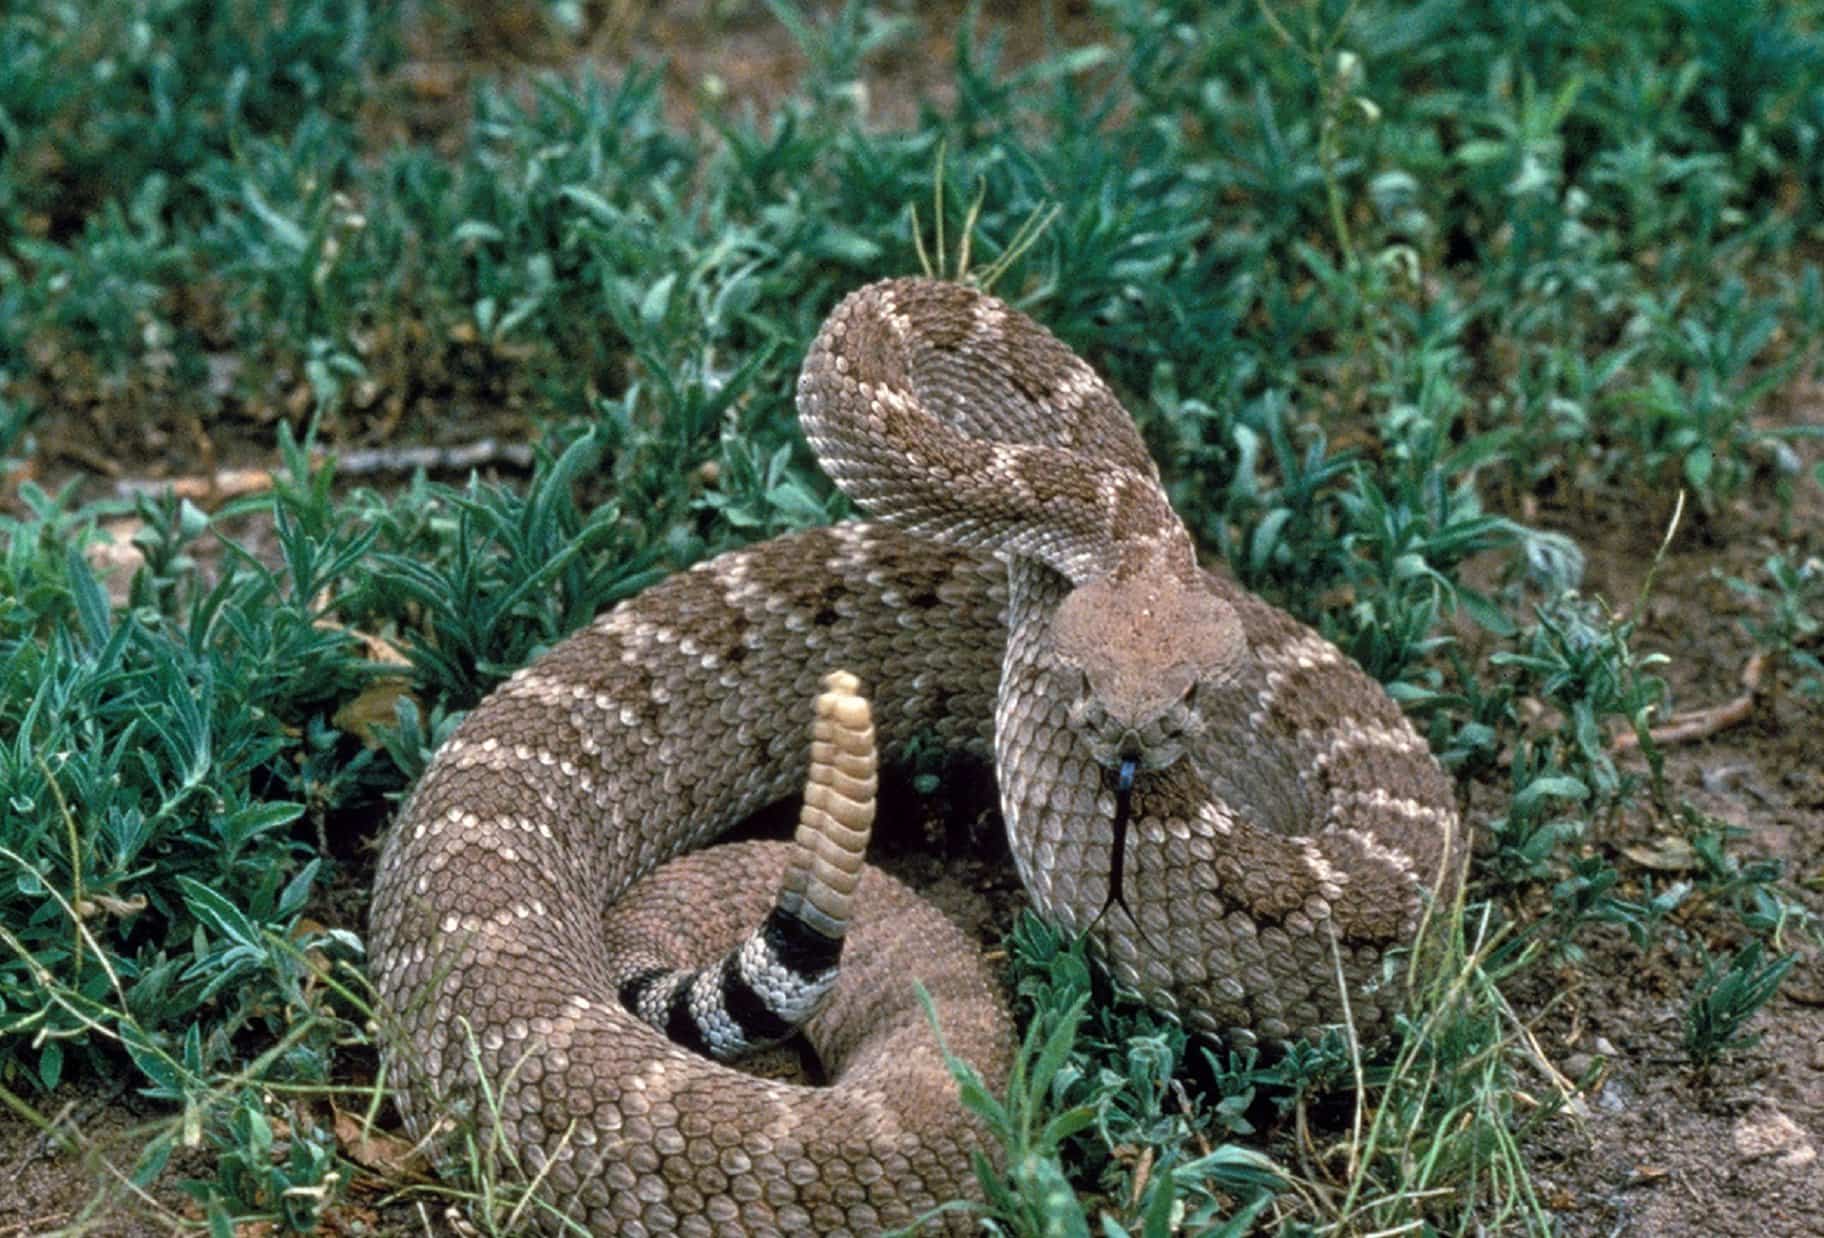 Serpiente cascabel en el pasto en modo defensa